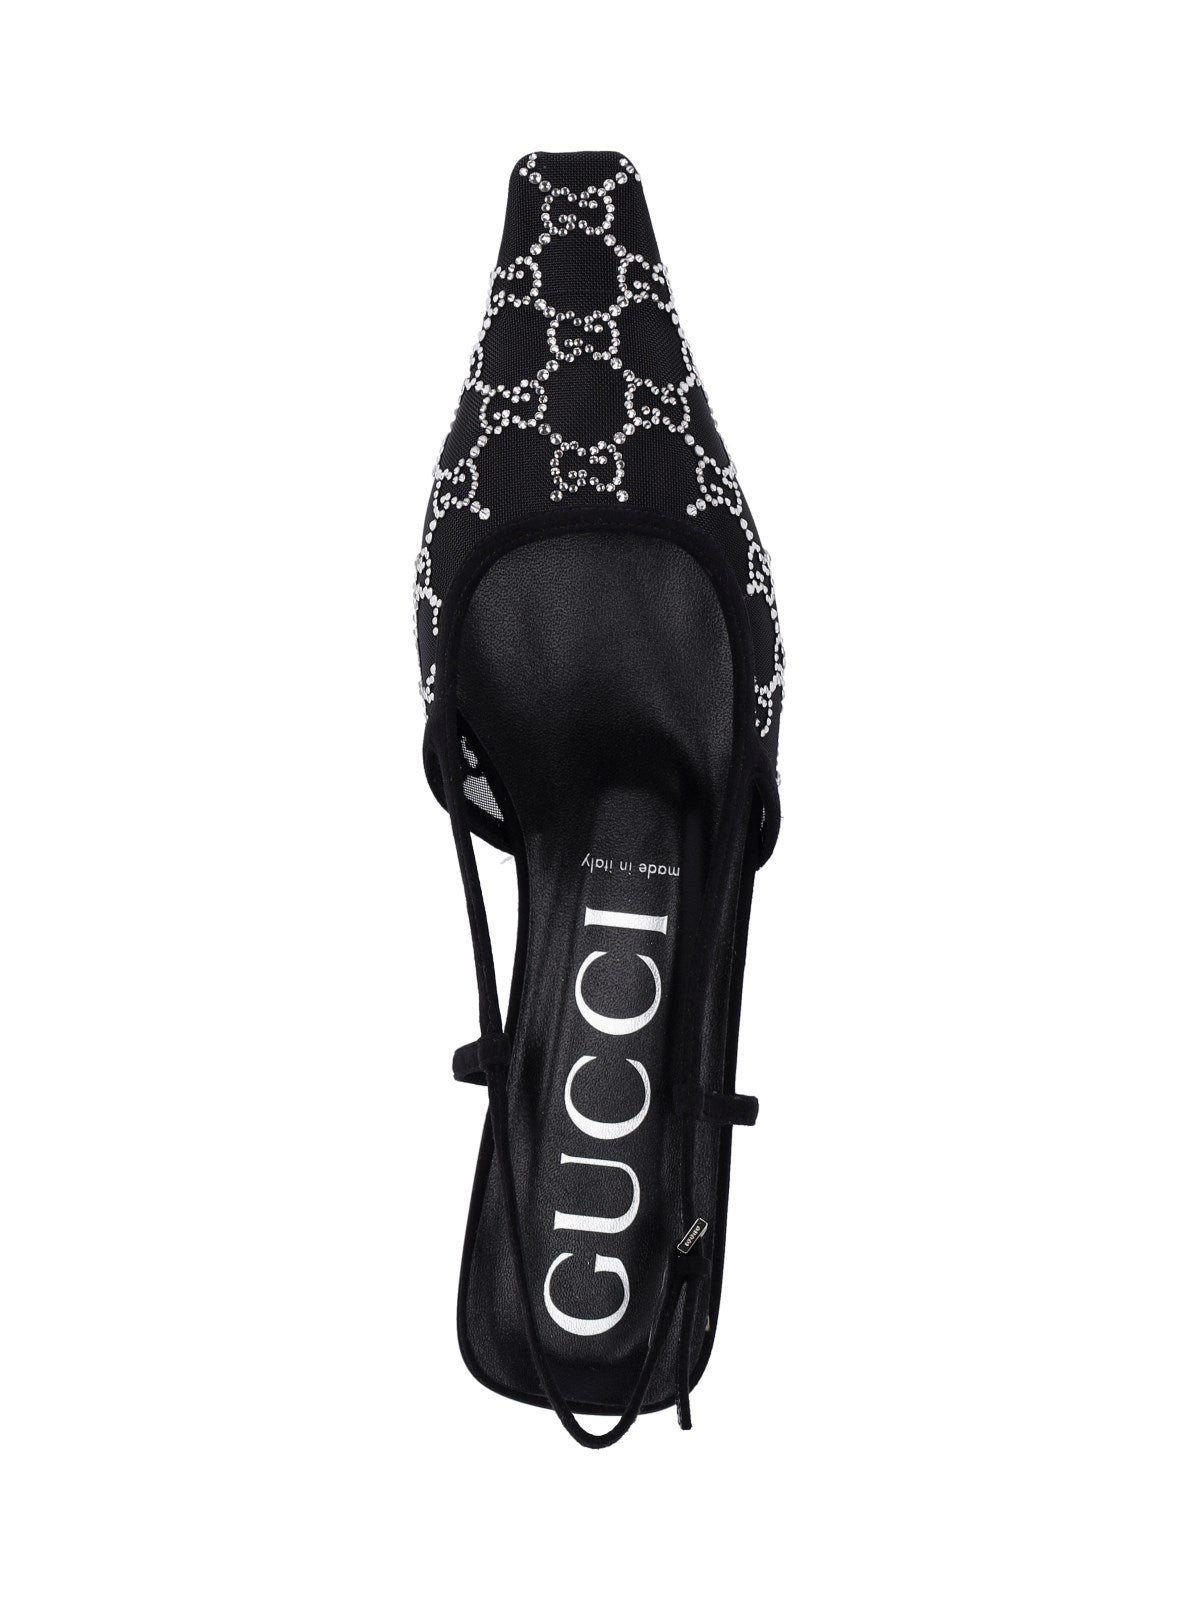 Gucci Slingback logo cristalli-sandali bassi-Gucci-Sligback logo cristalli Gucci, in mesh nero, motivo logo cristalli all-over, finiture in suede, a punta, vestibilità slip-on, cinturino regolabile posteriore, suola in cuoio.-Dresso